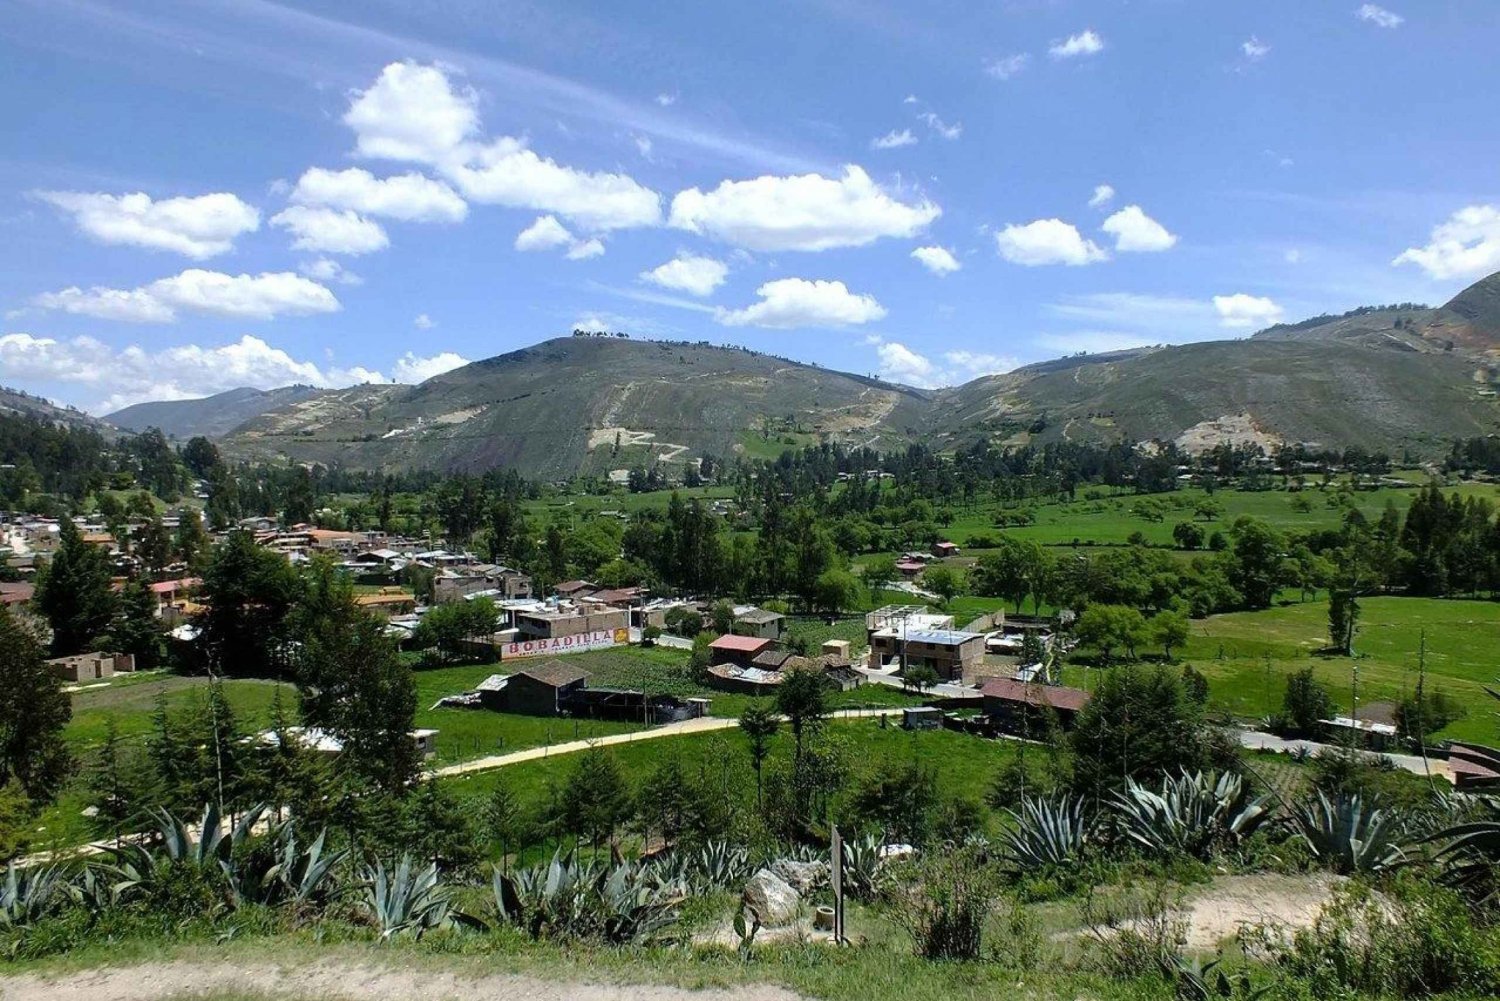 || Tour door de Cajamarca Vallei - San Nicolás Lagune